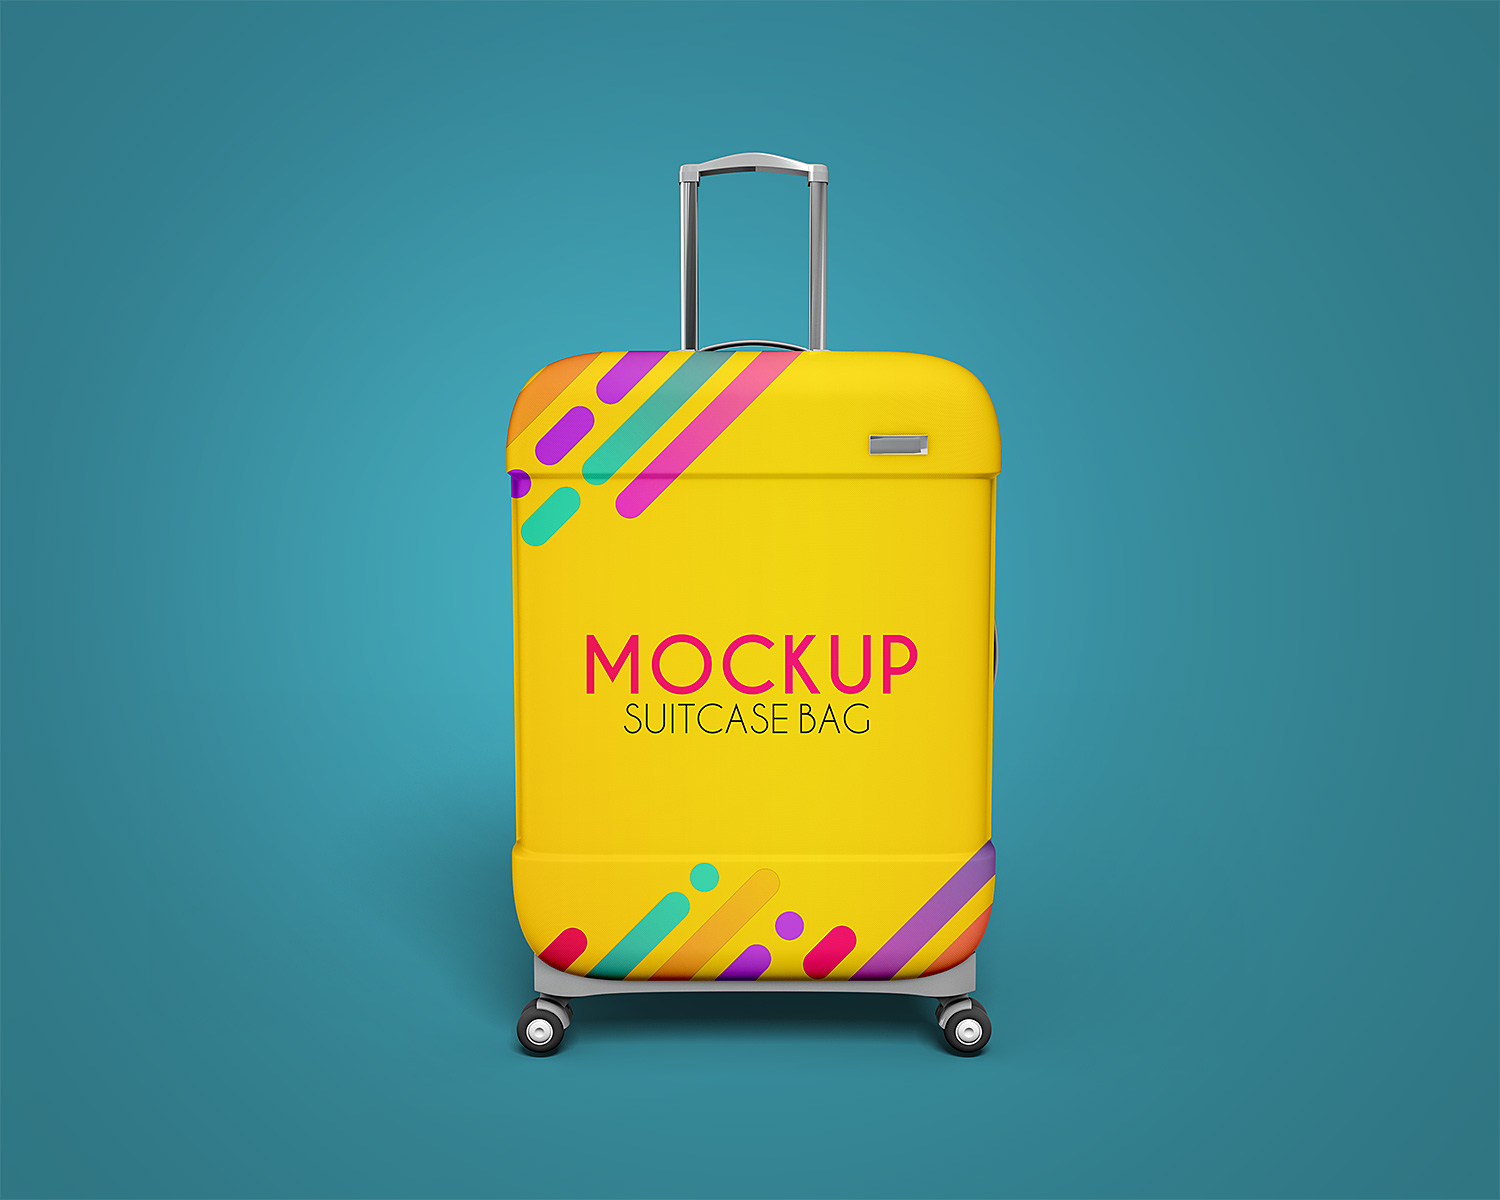 Suitcase-Bag-Mockups-Free-01